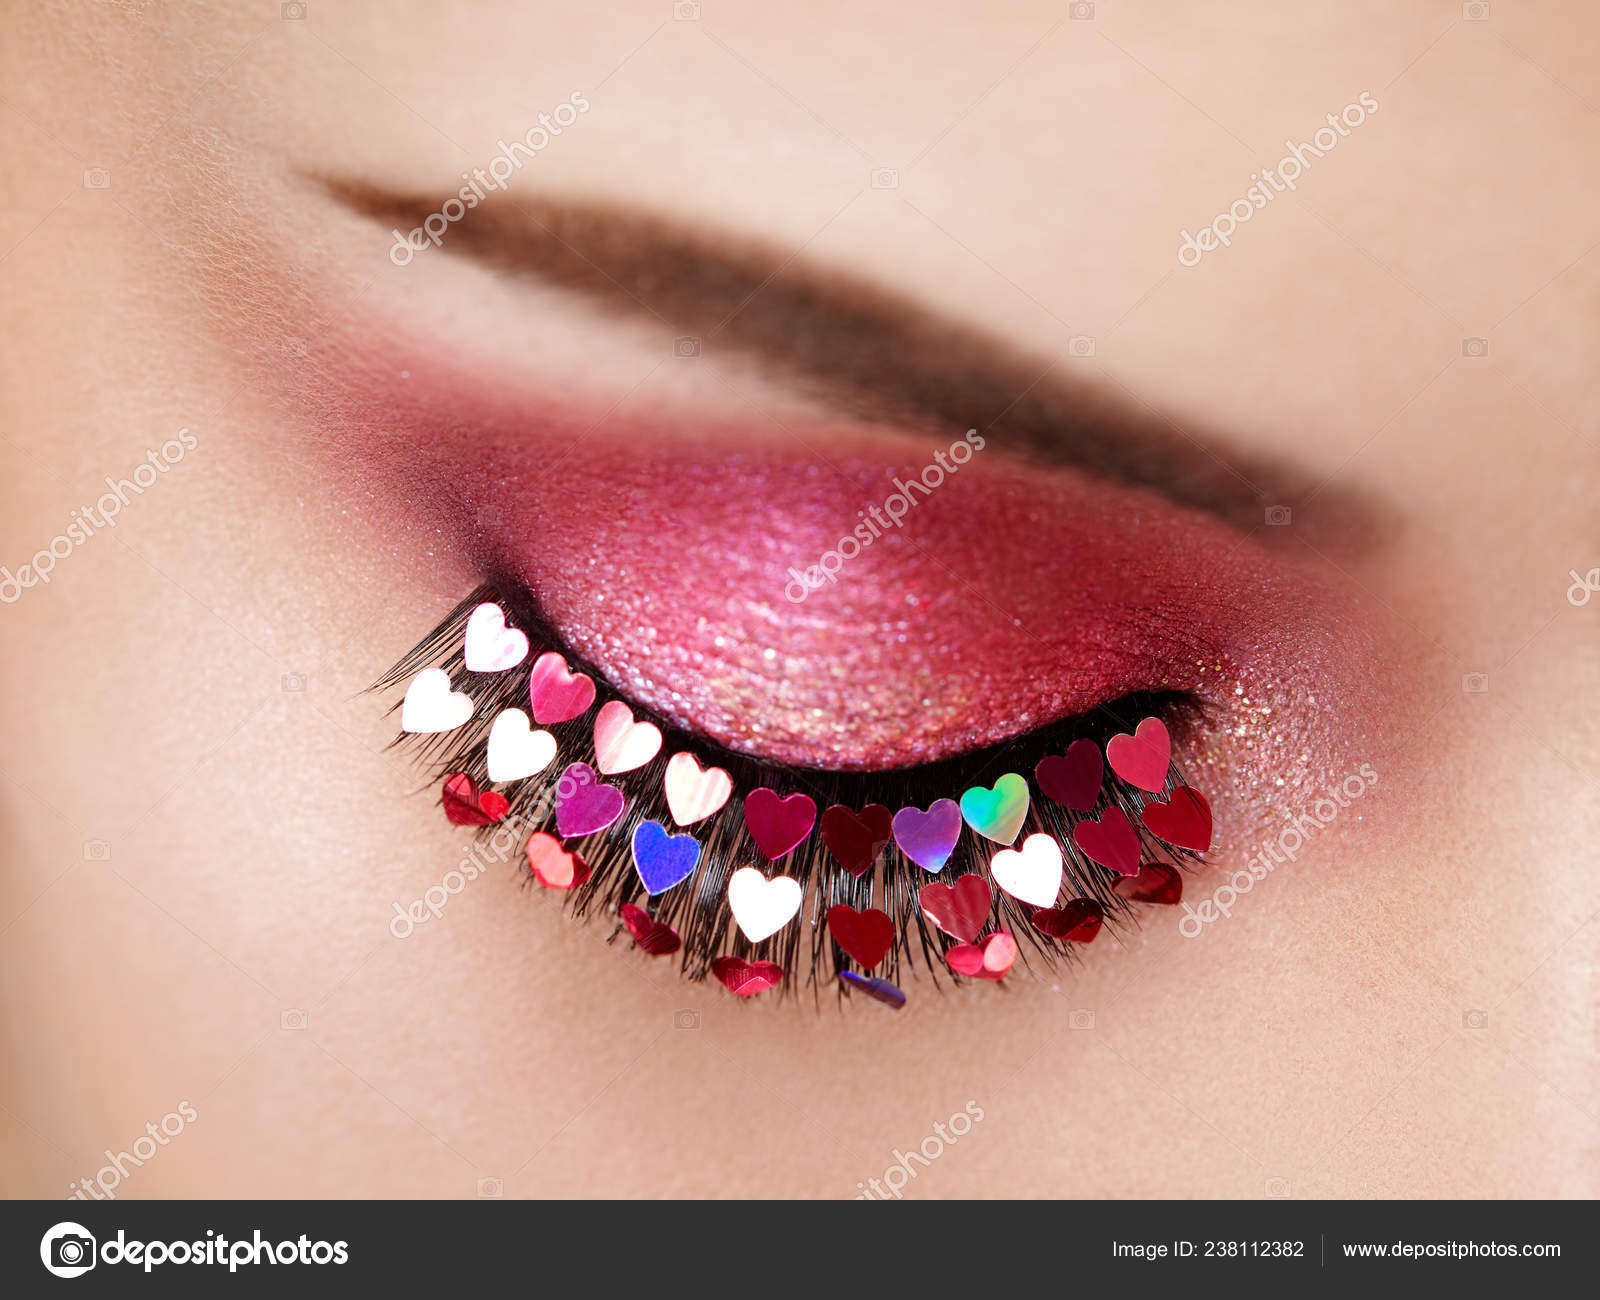 masks #makeup #lips #cute #face ##girly #girl #love - Maquiagem